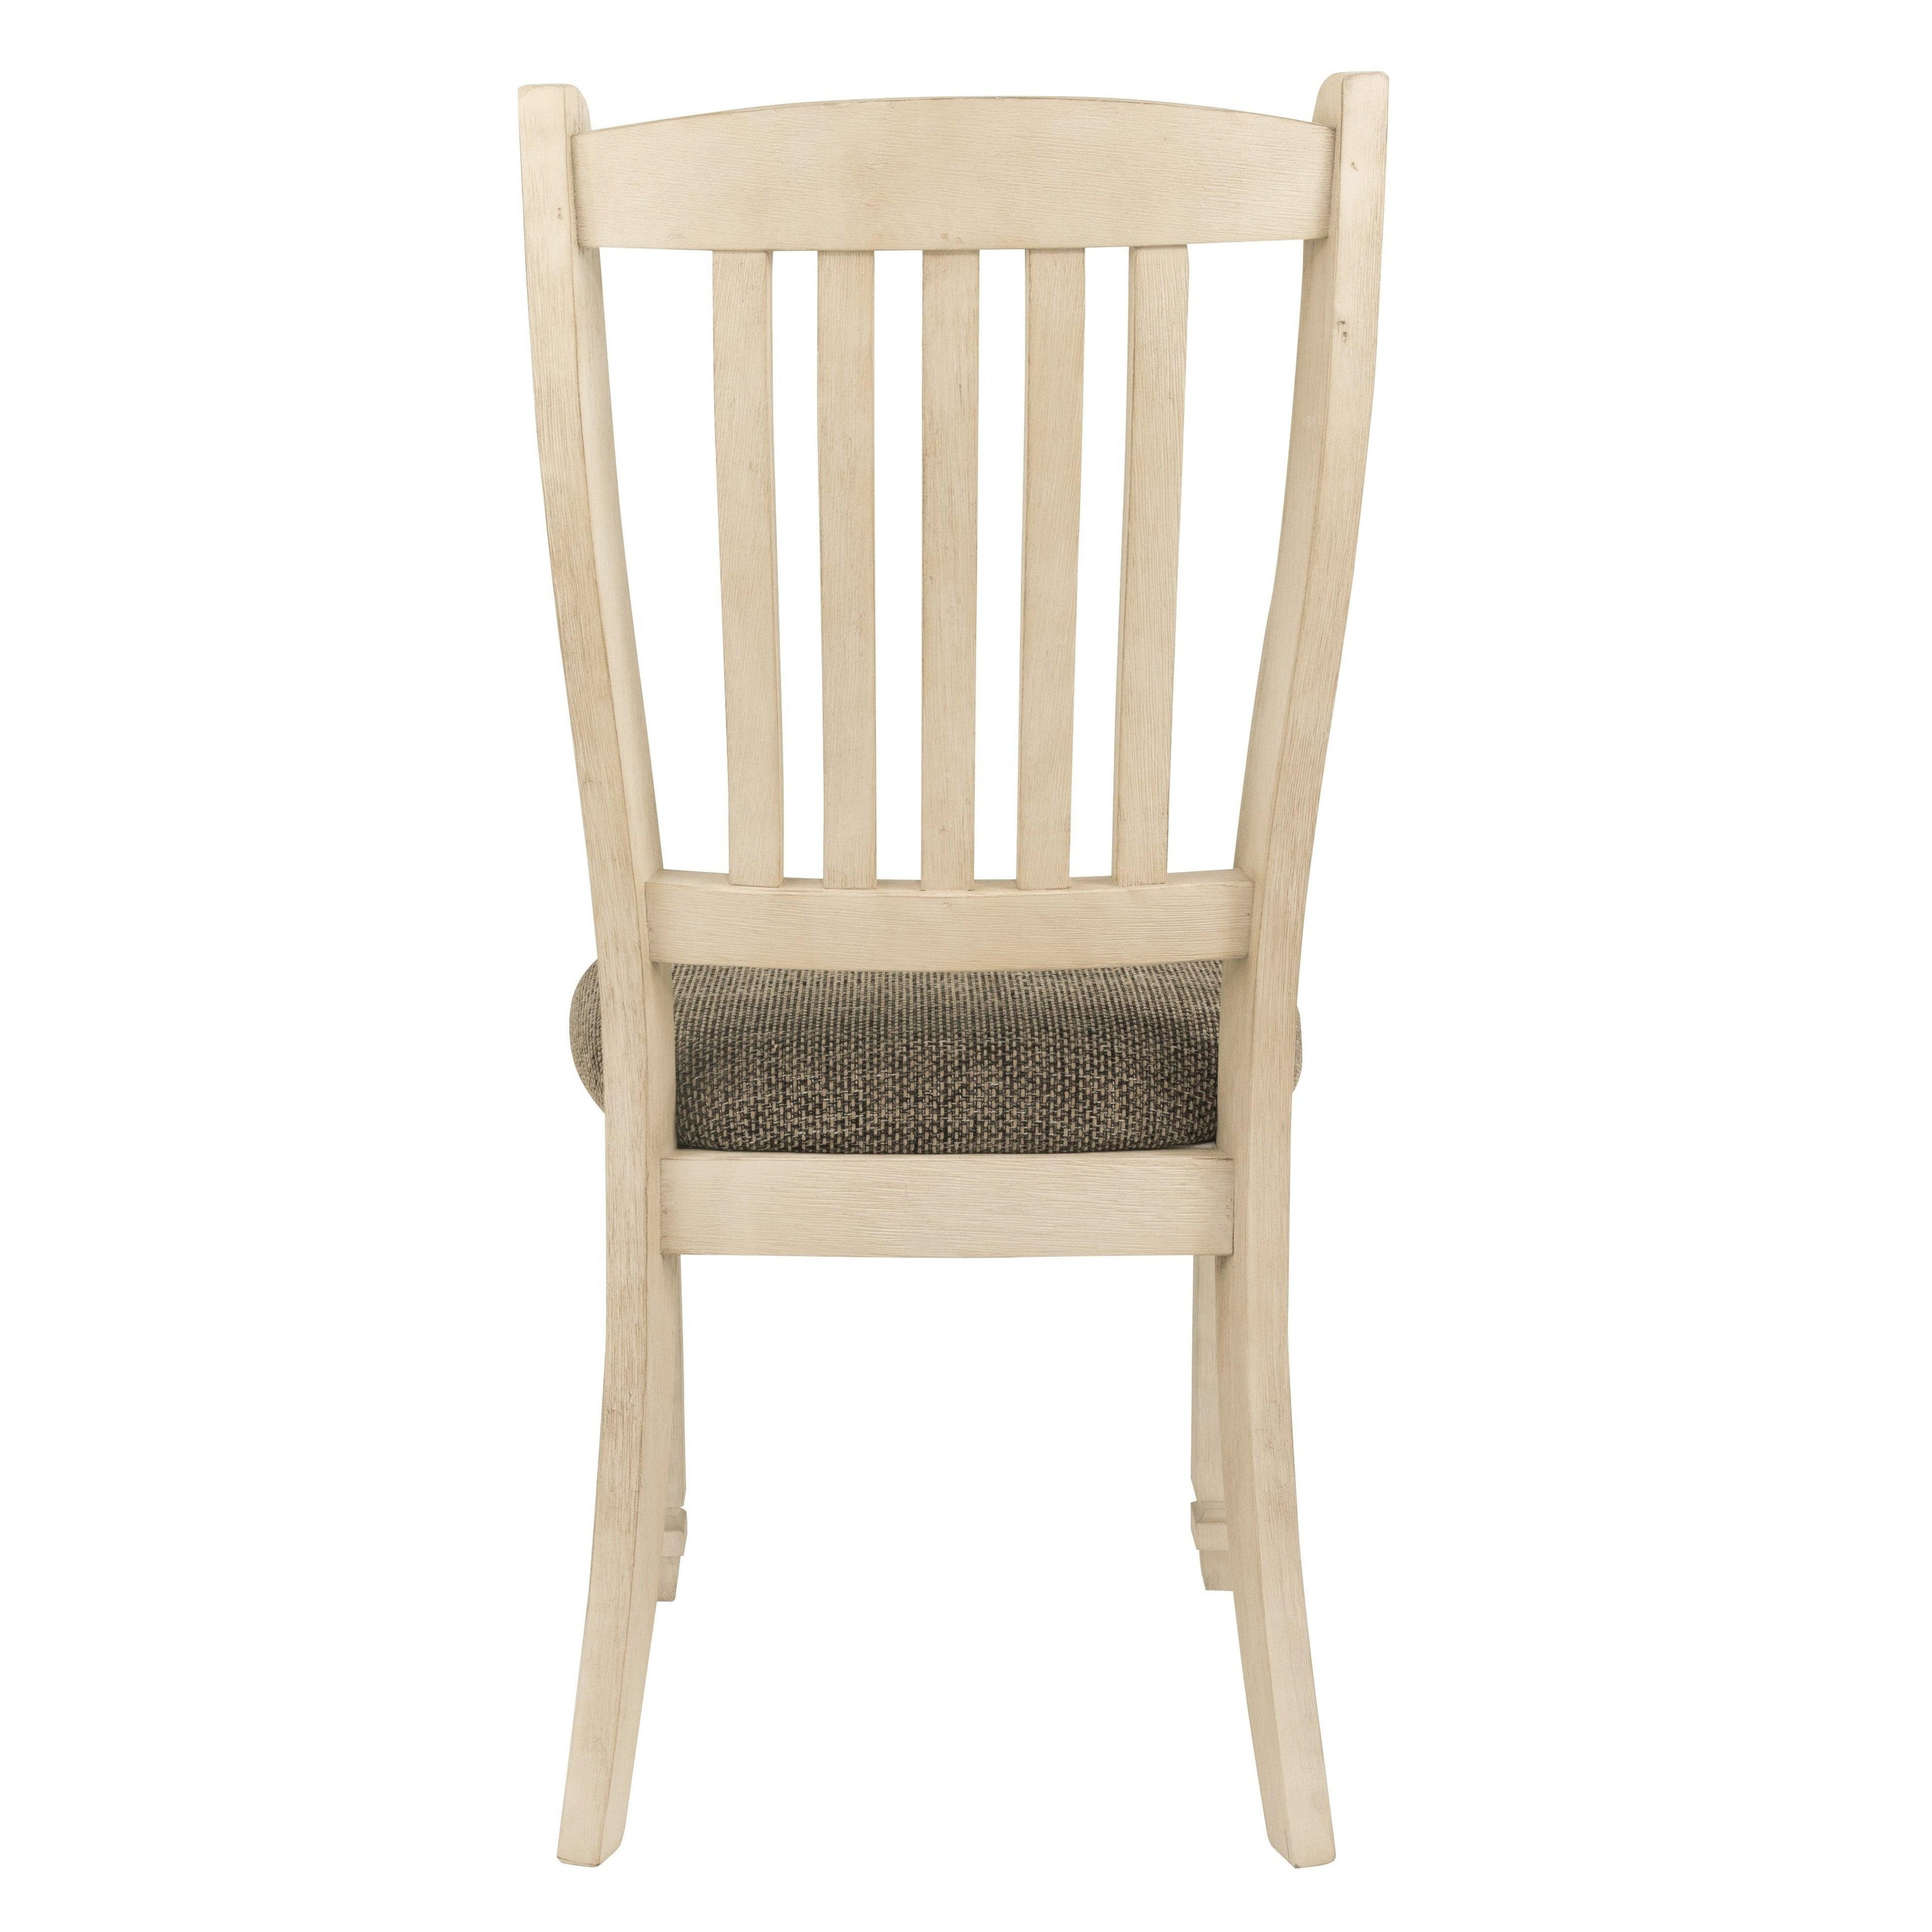 Bolanburg Dining Chair Ash-D647-01